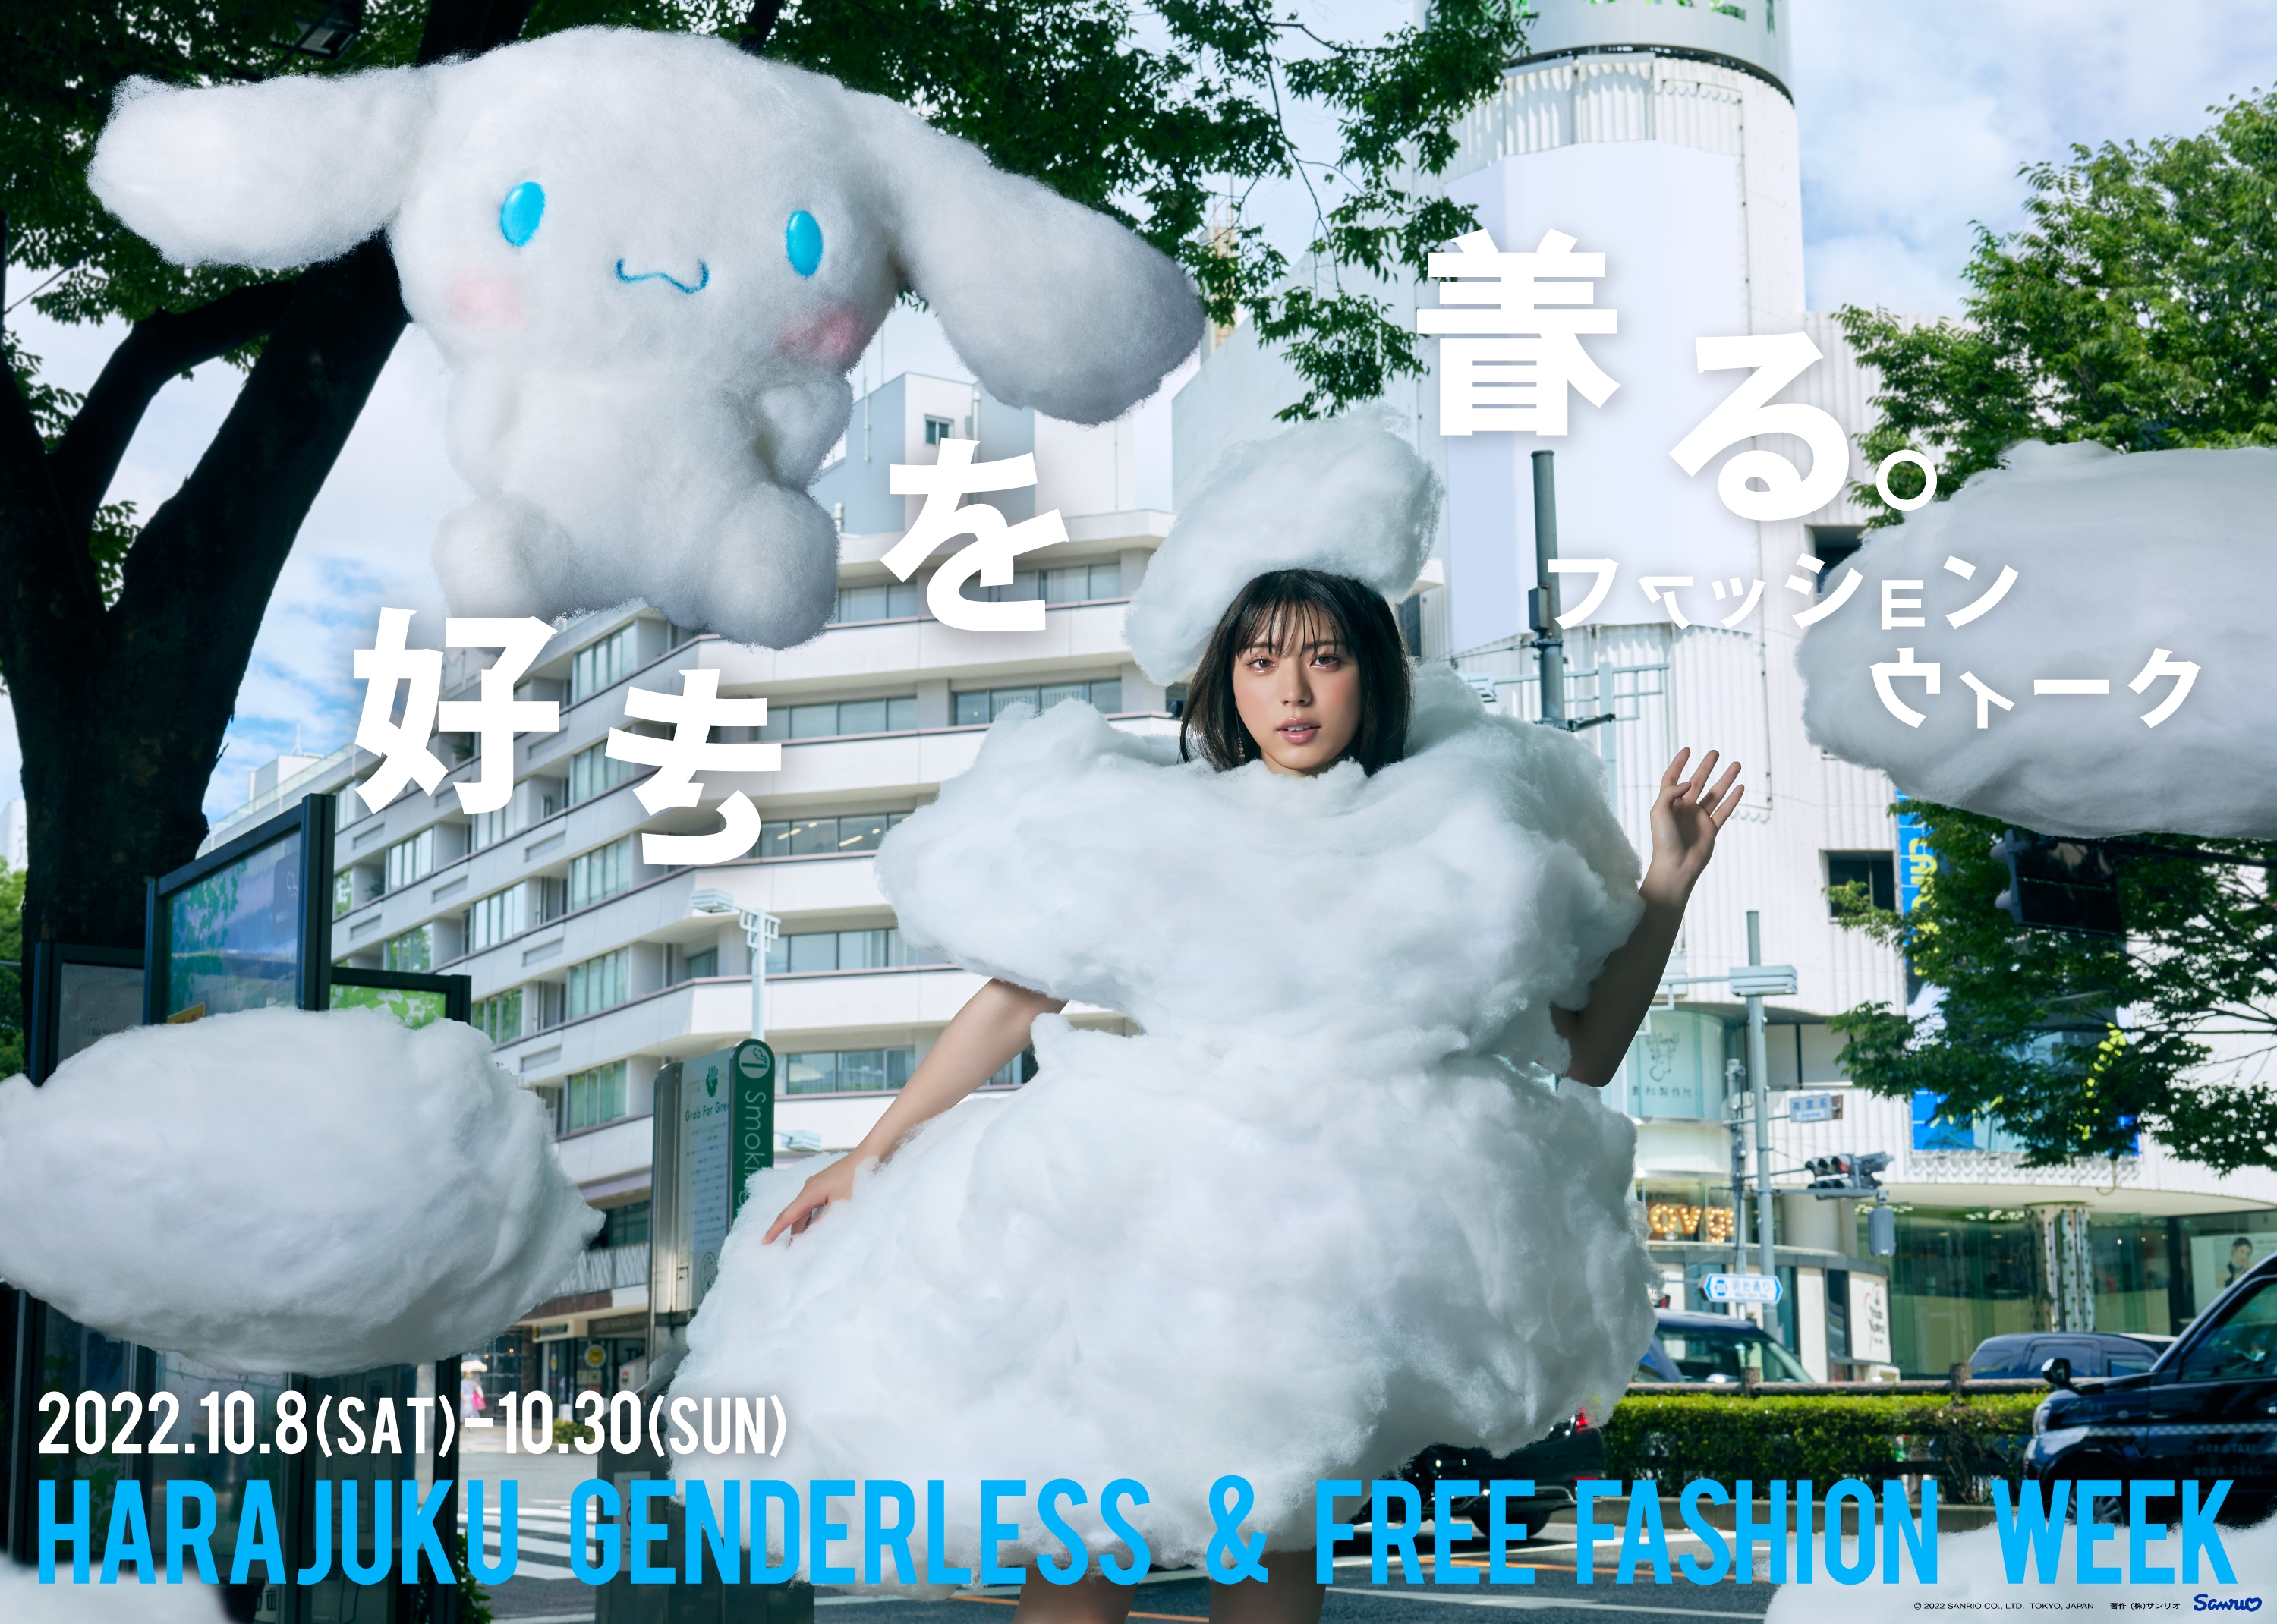 好きを着る。ファッションウィーク 2022.10.8(SAT)-10.30(SUN) HARAJUKU GENDERLESS & FREE Fashion Week